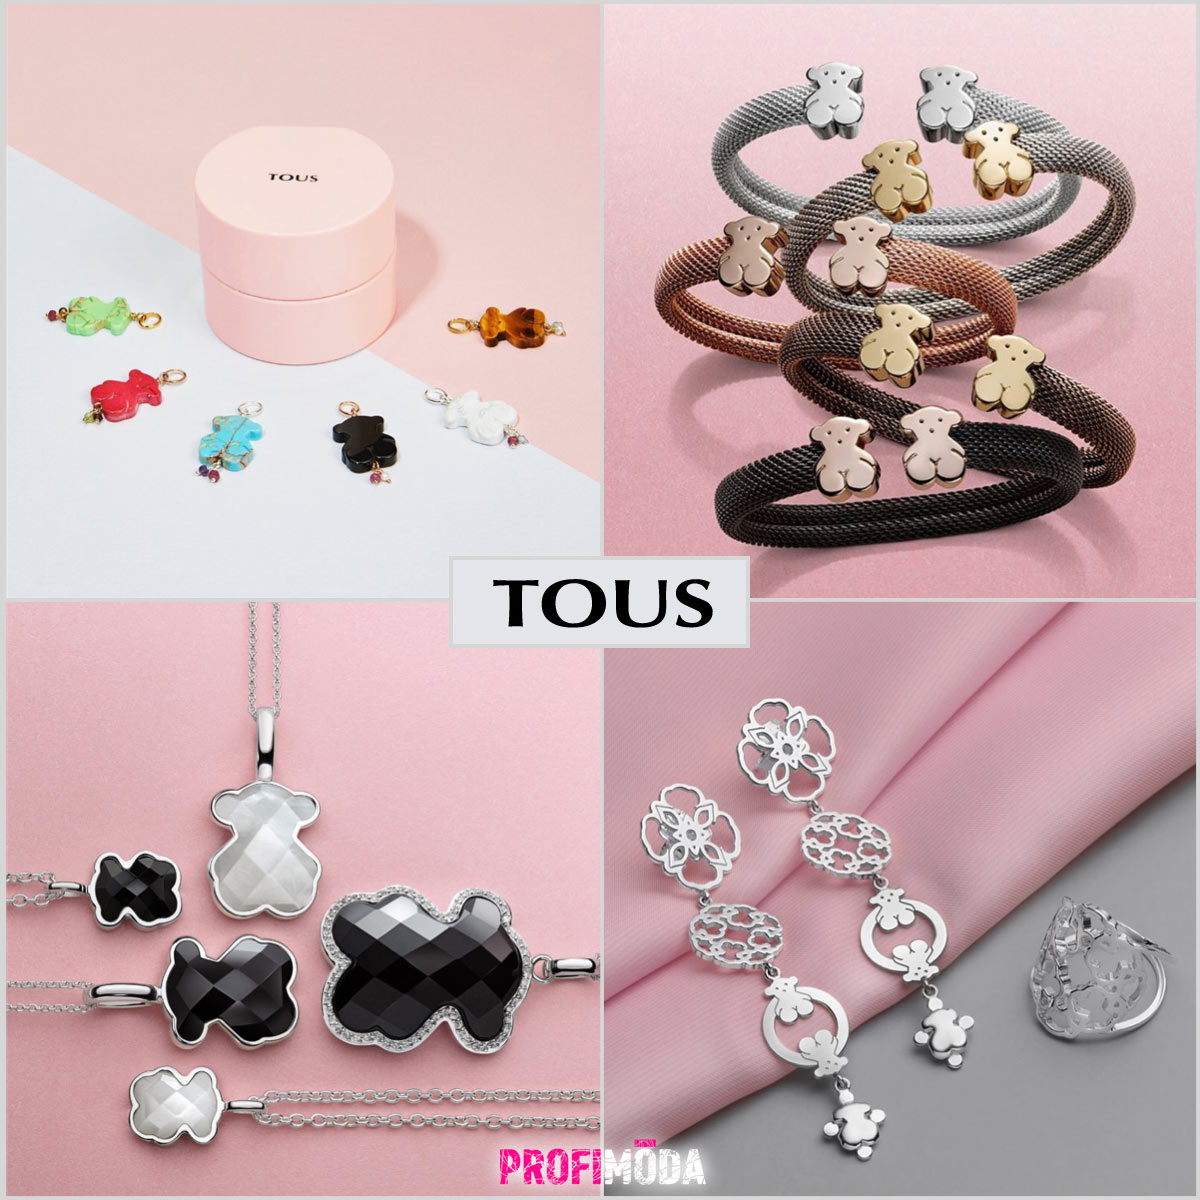 Tous náušnice, náramky, řetízky, náhrdelníky, přívěšky, prsteny – to vše jsou šperky, které vynikají svým unikátním designem. 